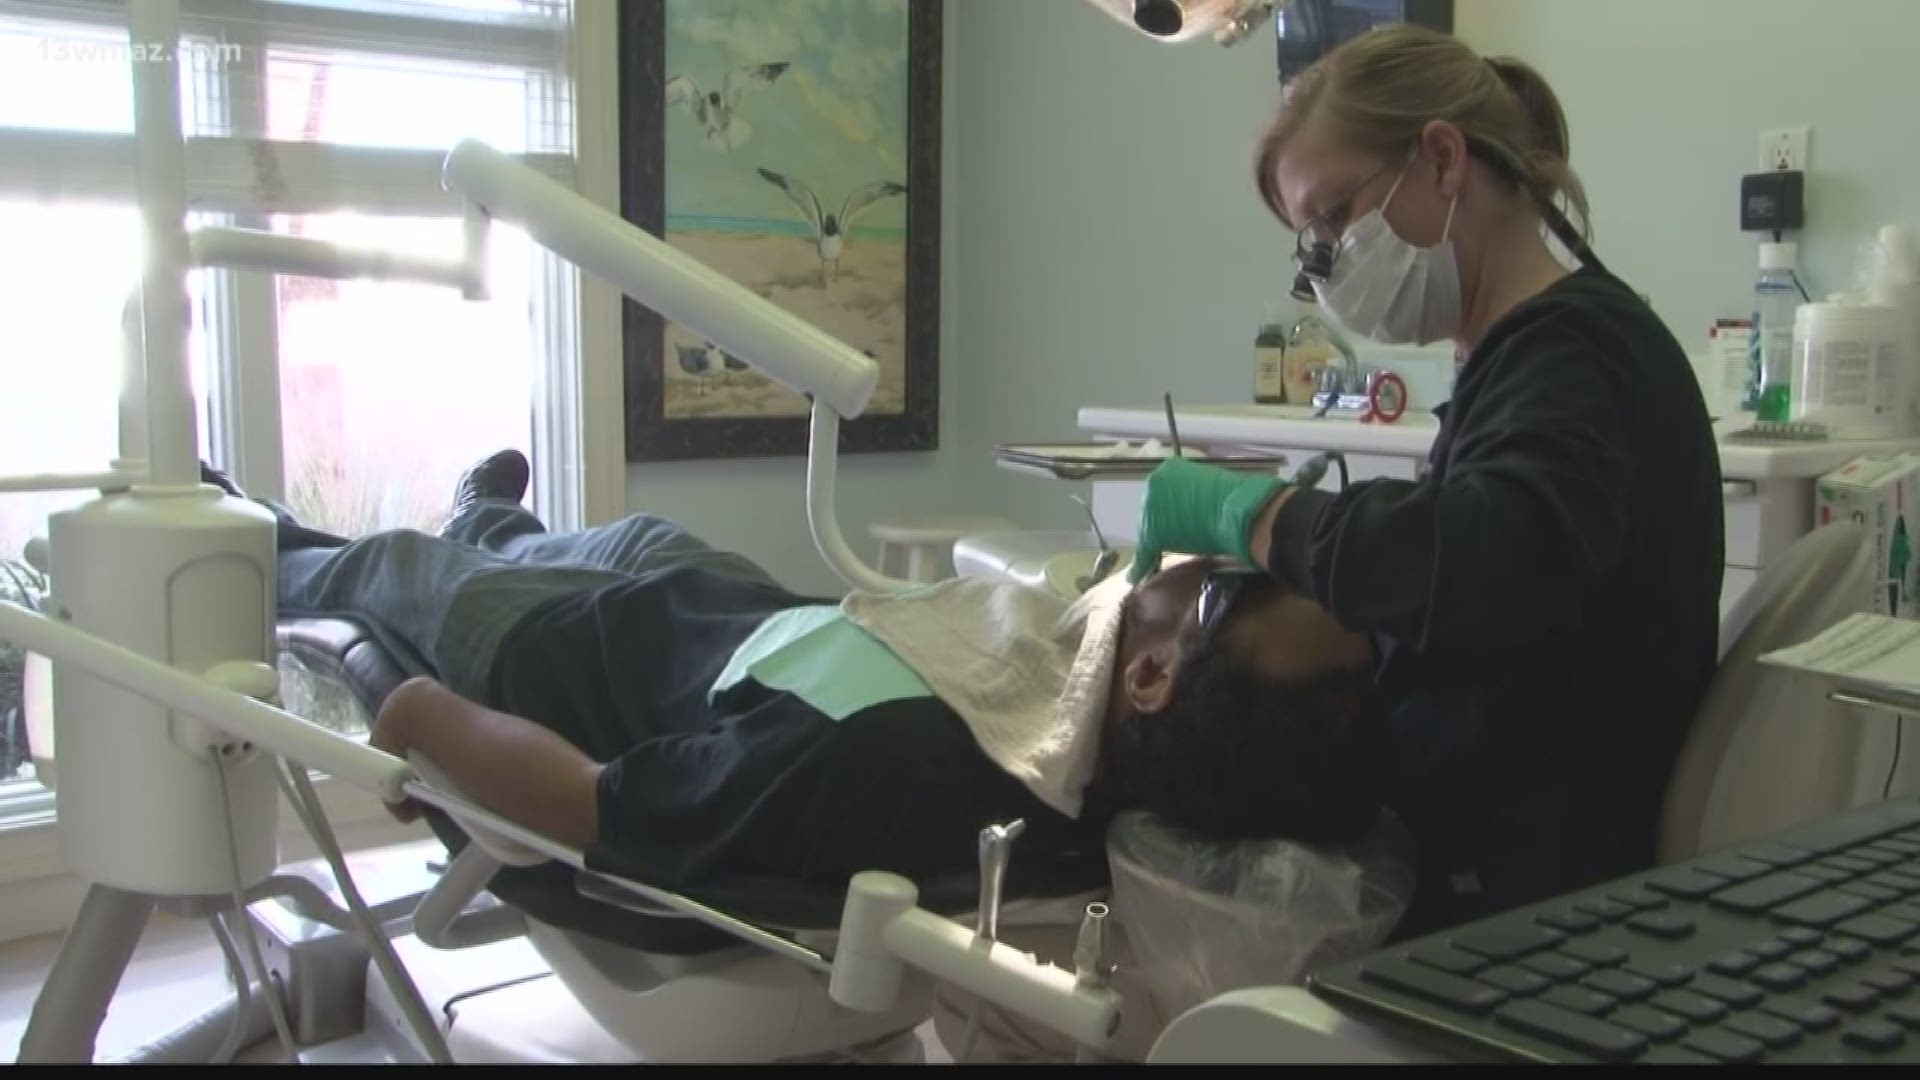 Veterans get free dental work in Warner Robins